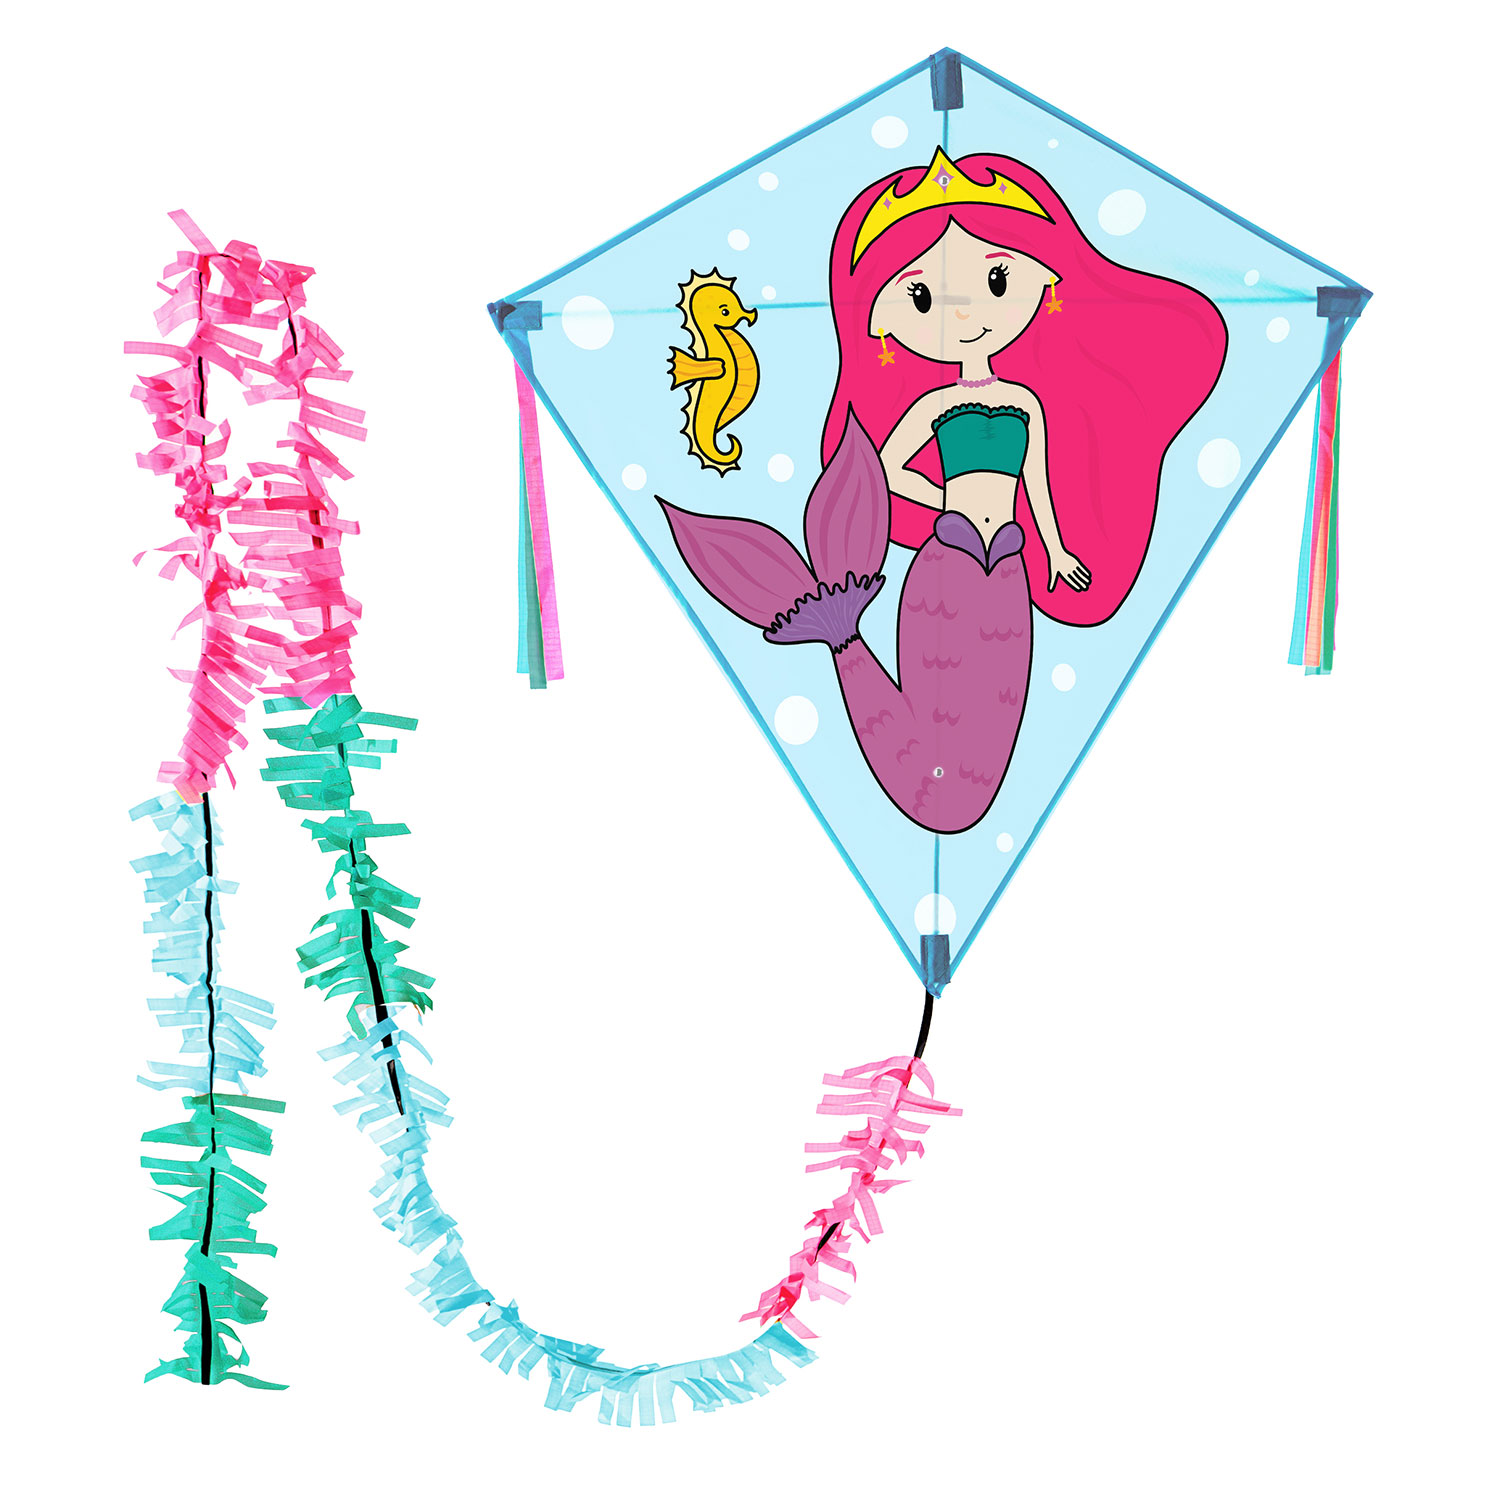 Wolkenstürmer Rautendrachen für Kinder mit Mermaid Meerjungfrau kaufen!